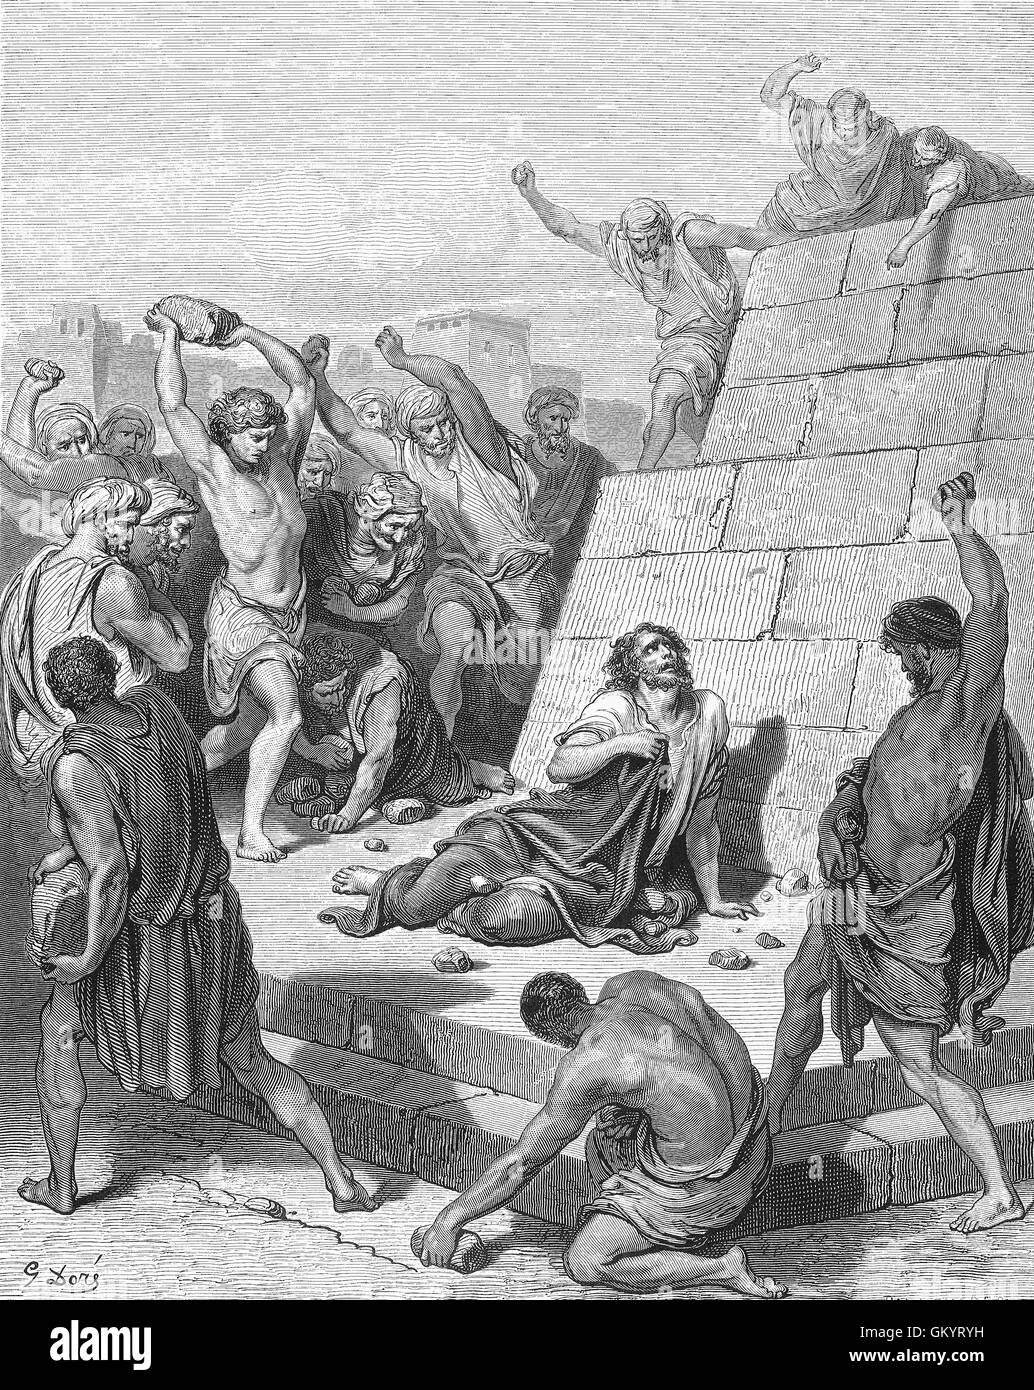 Grabado del martirio de san Esteban, por Gustave Doré Foto de stock